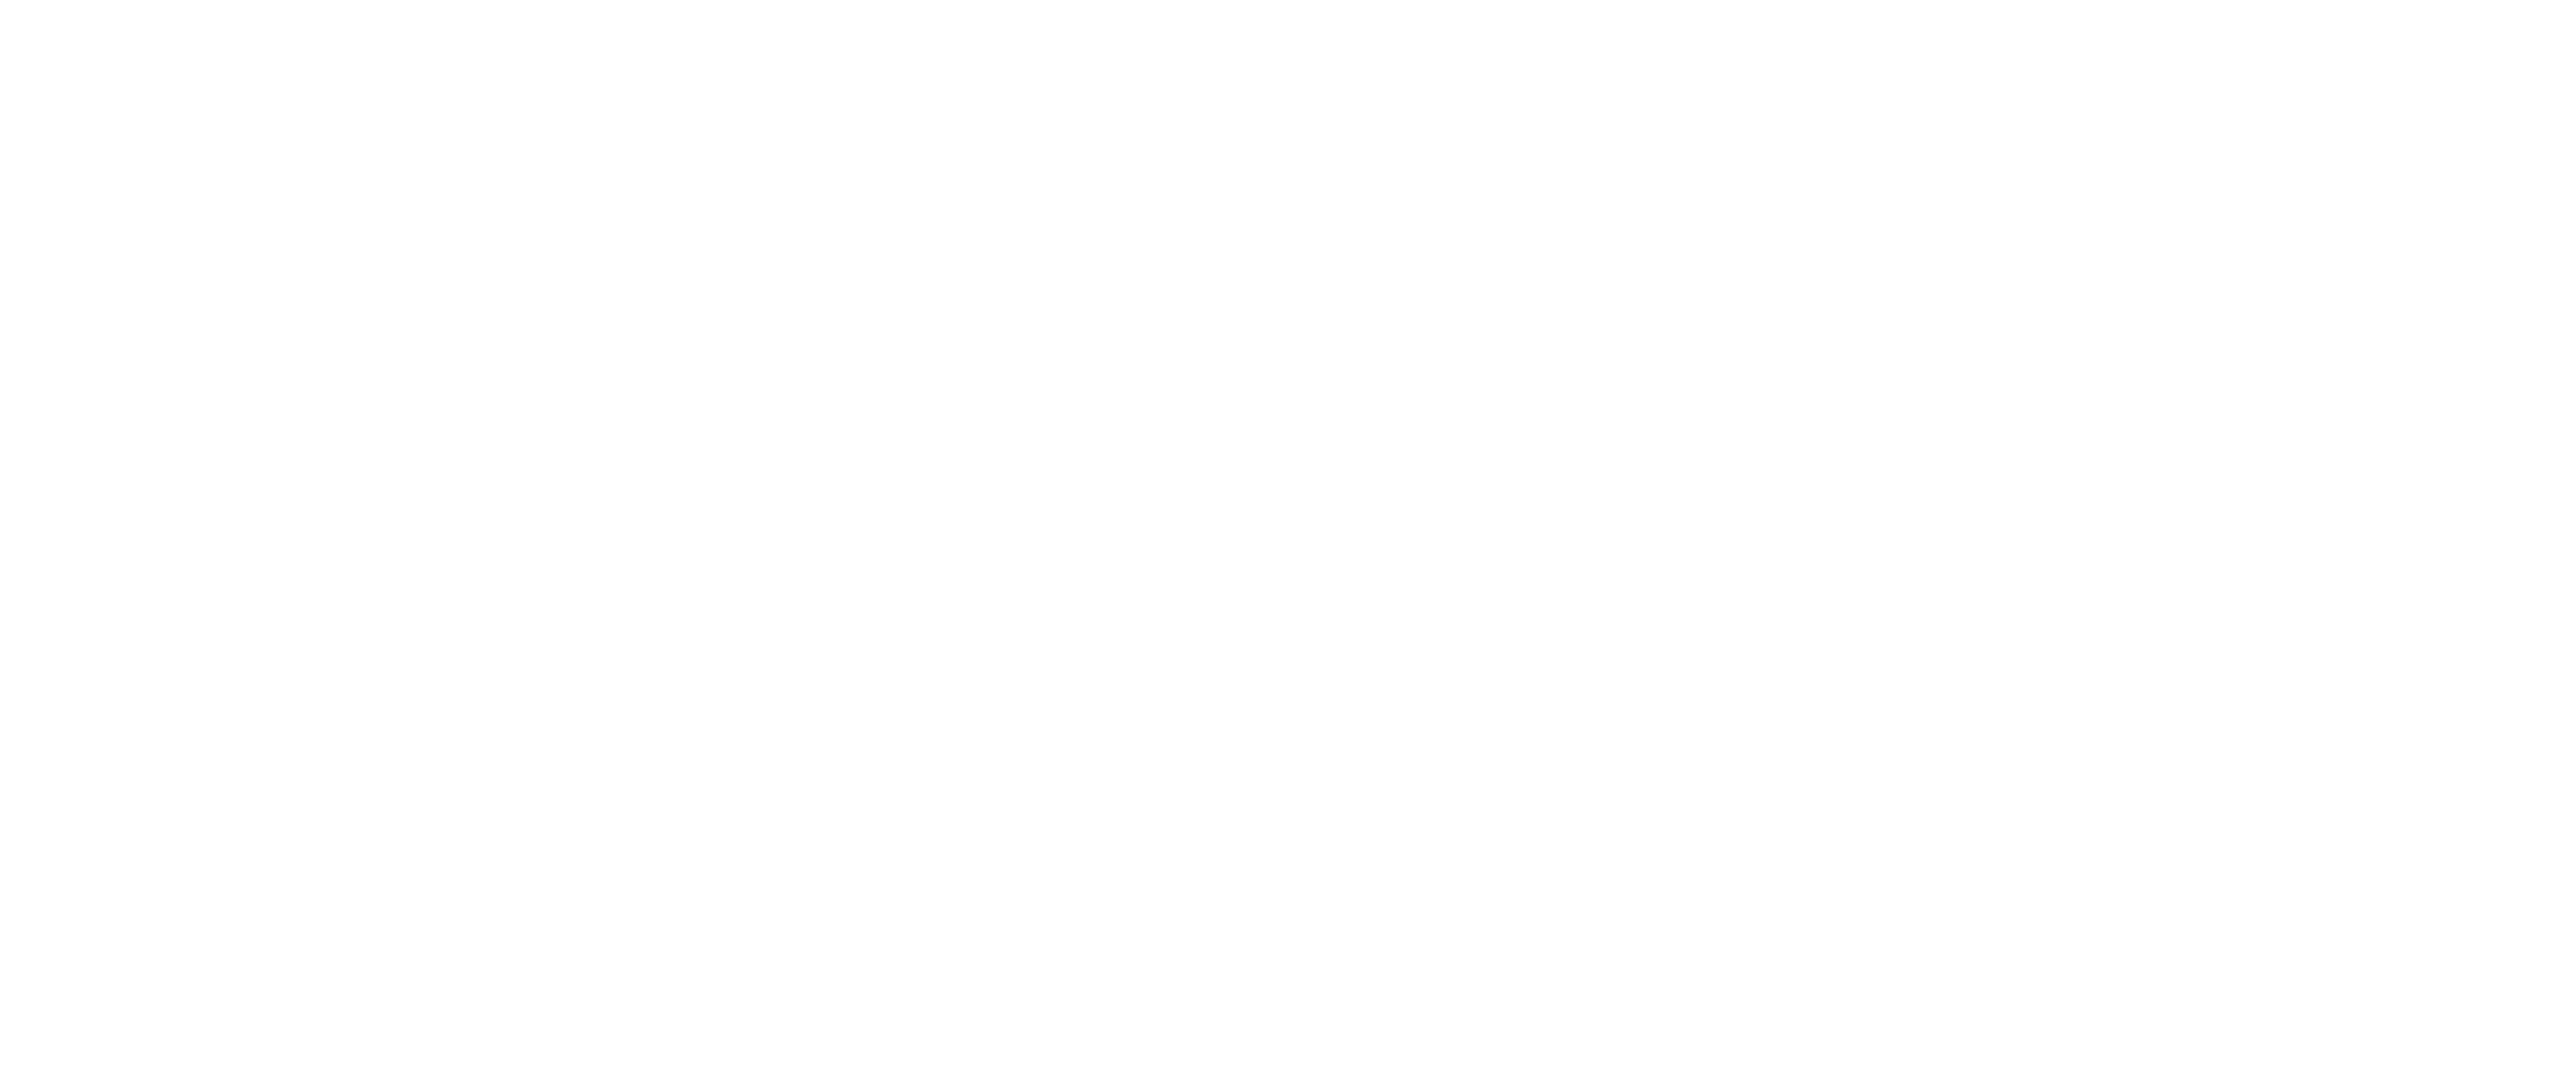 Art of Travel logo